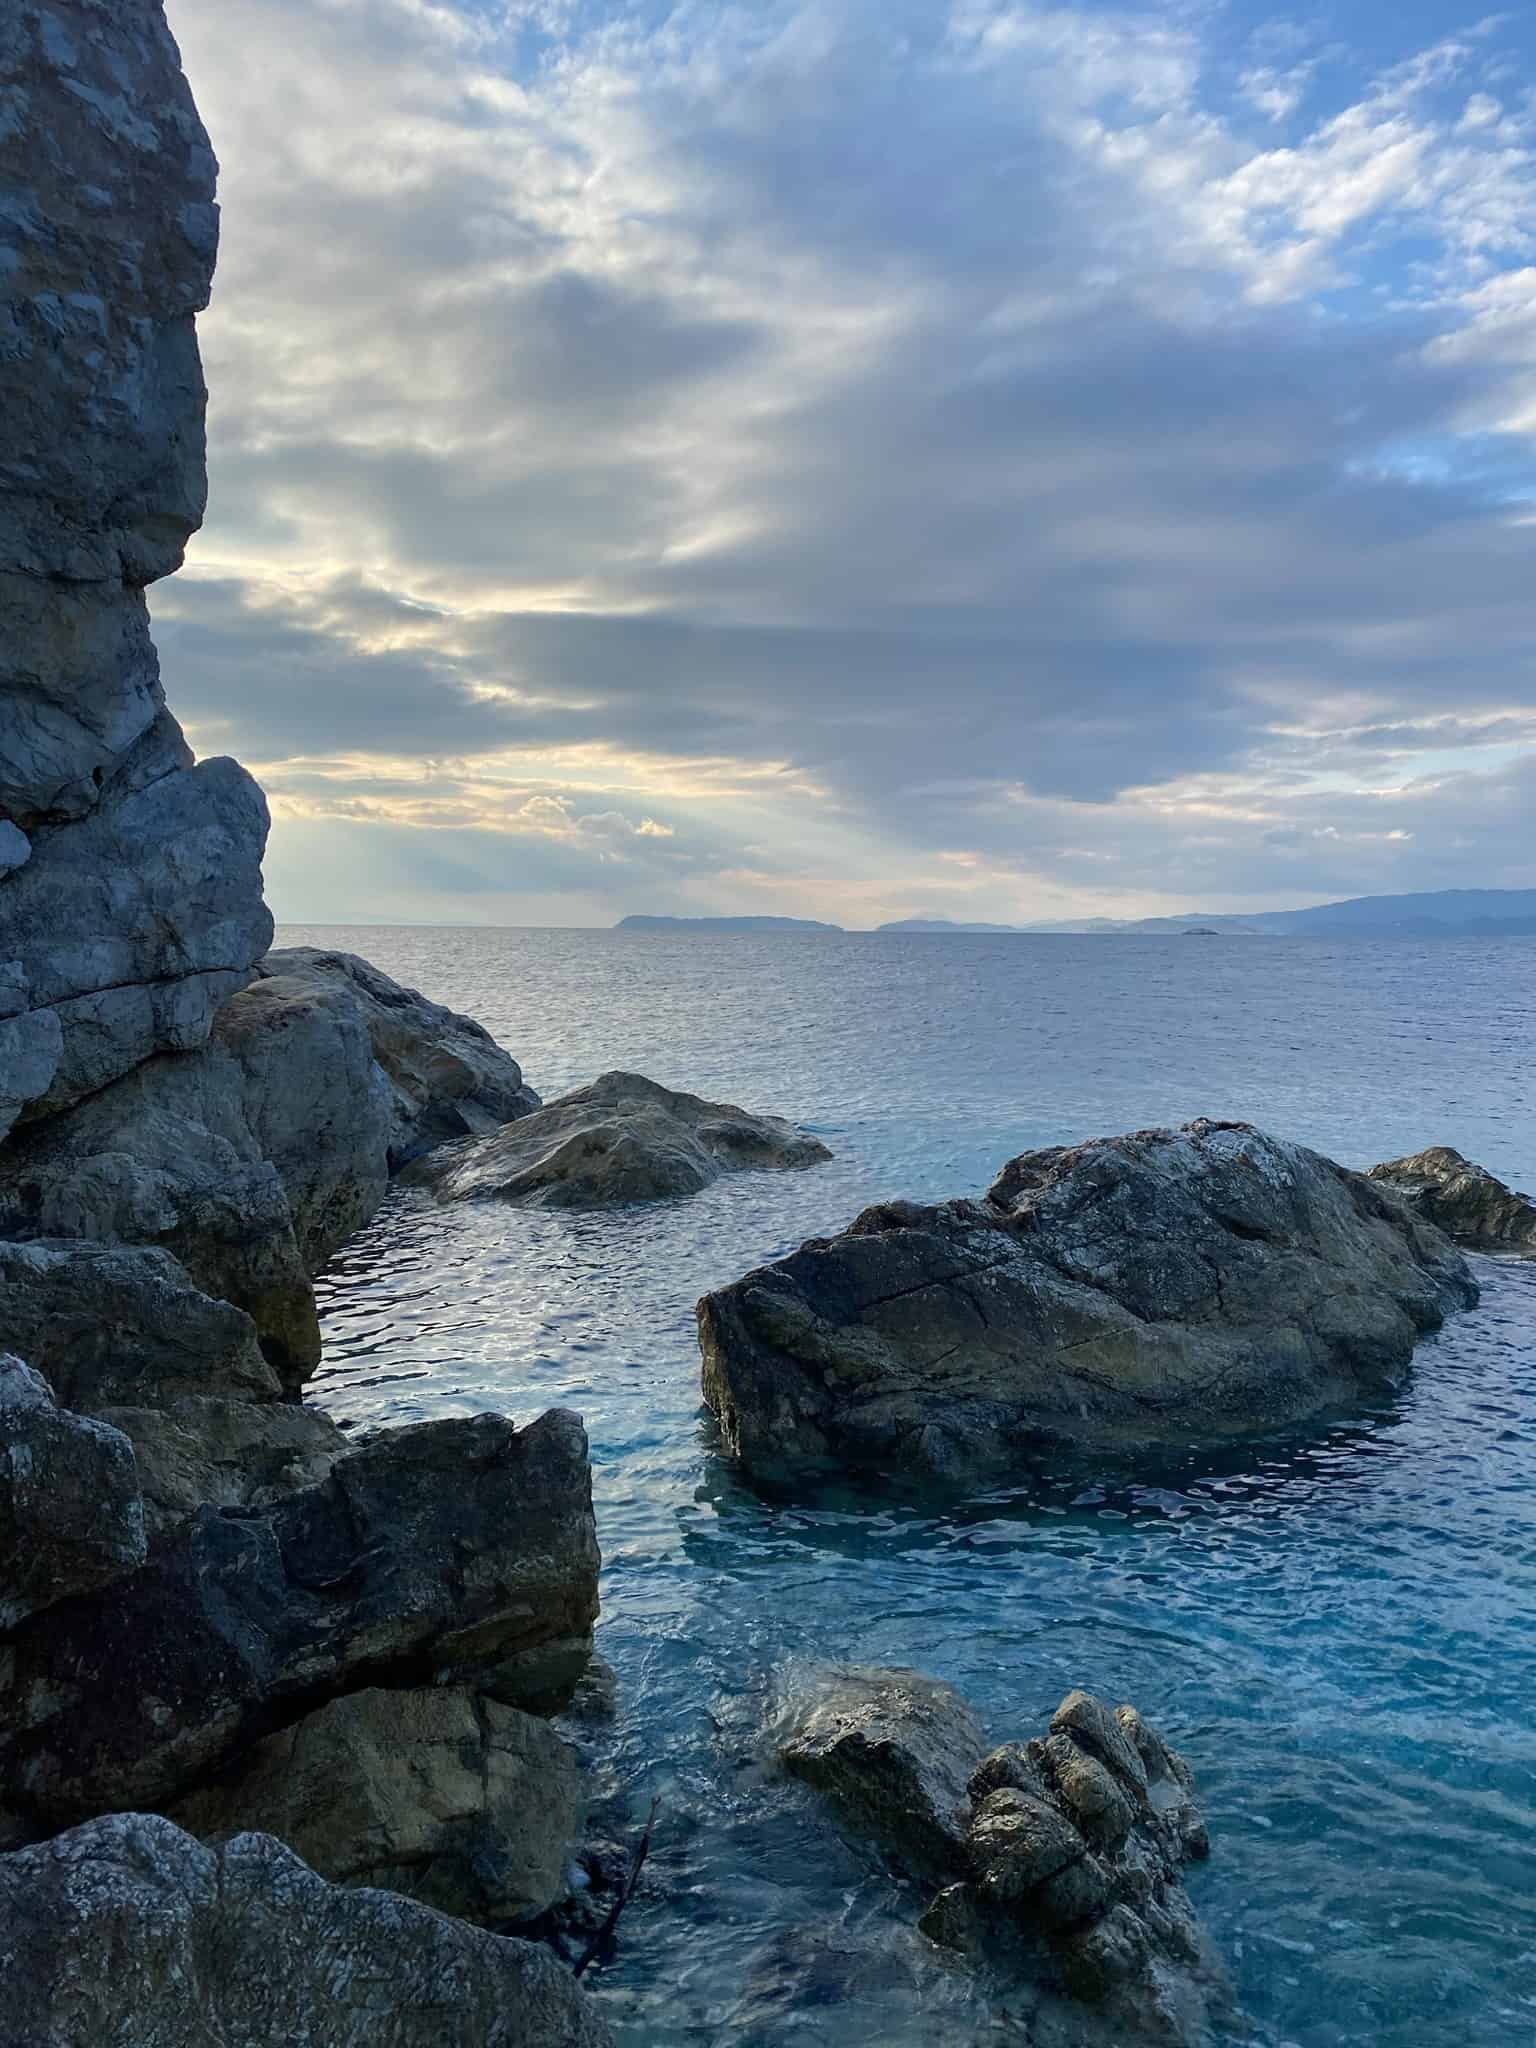 Quiet Greek islands